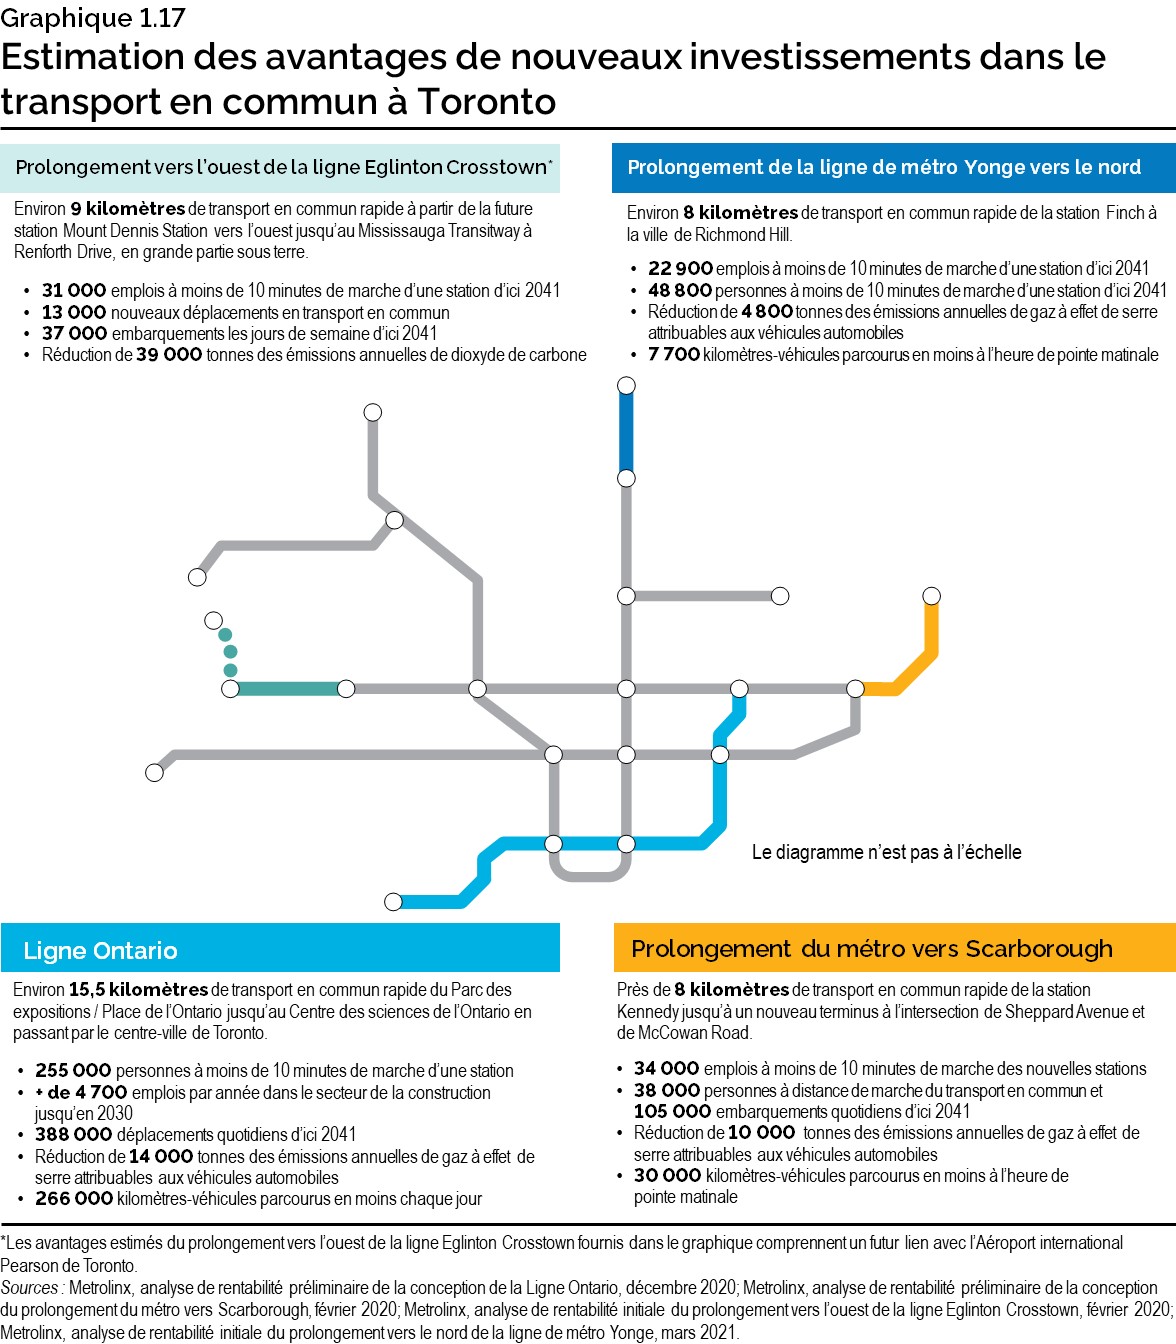 Graphique 1.17 : Estimation des avantages de nouveaux investissements dans le transport en commun à Toronto